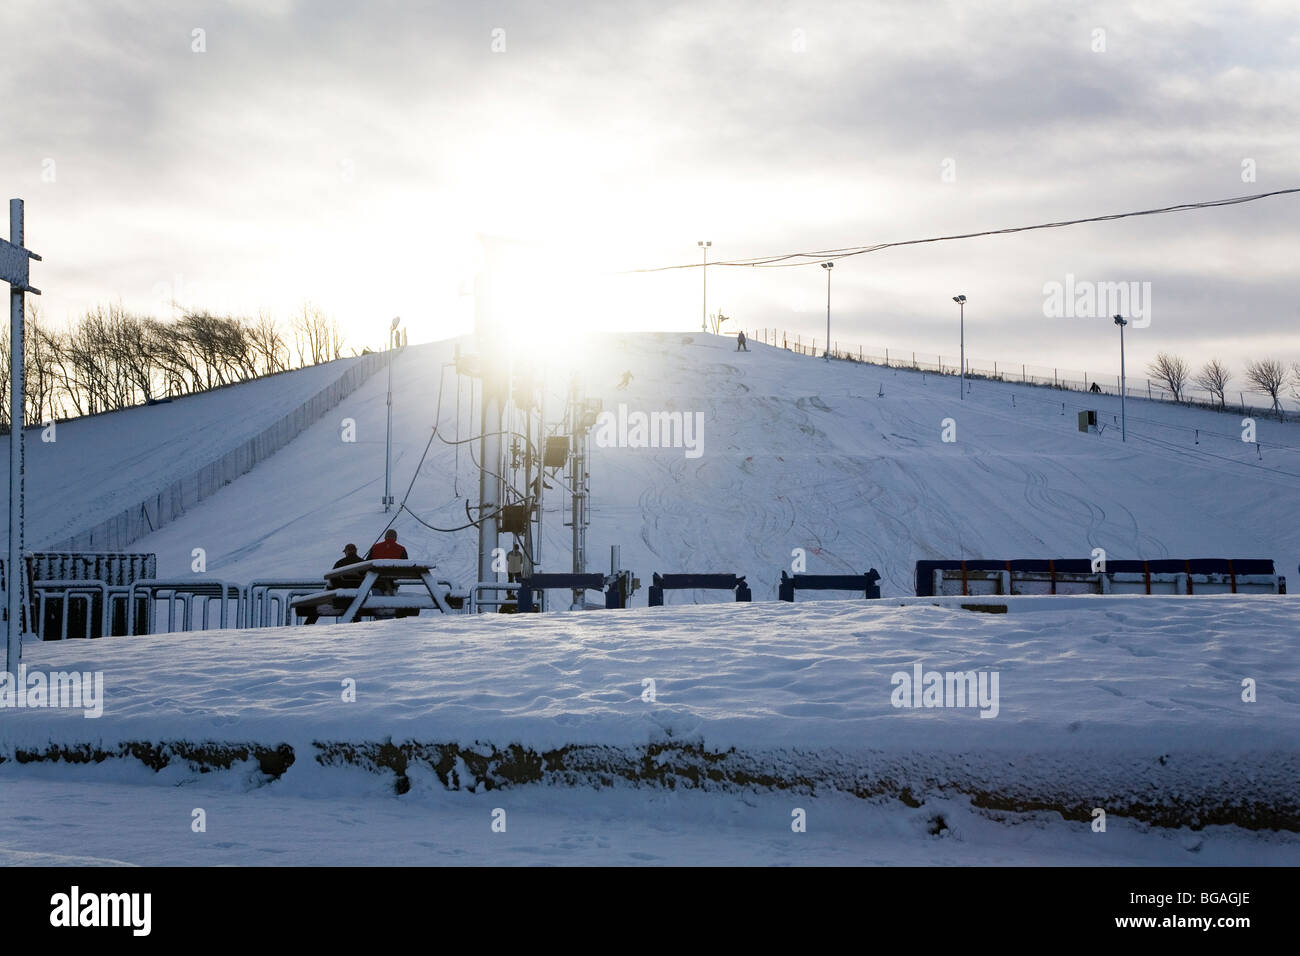 Le soleil brille sur les pistes de neige lié Silksworth pente de ski à Sunderland, en Angleterre. Banque D'Images